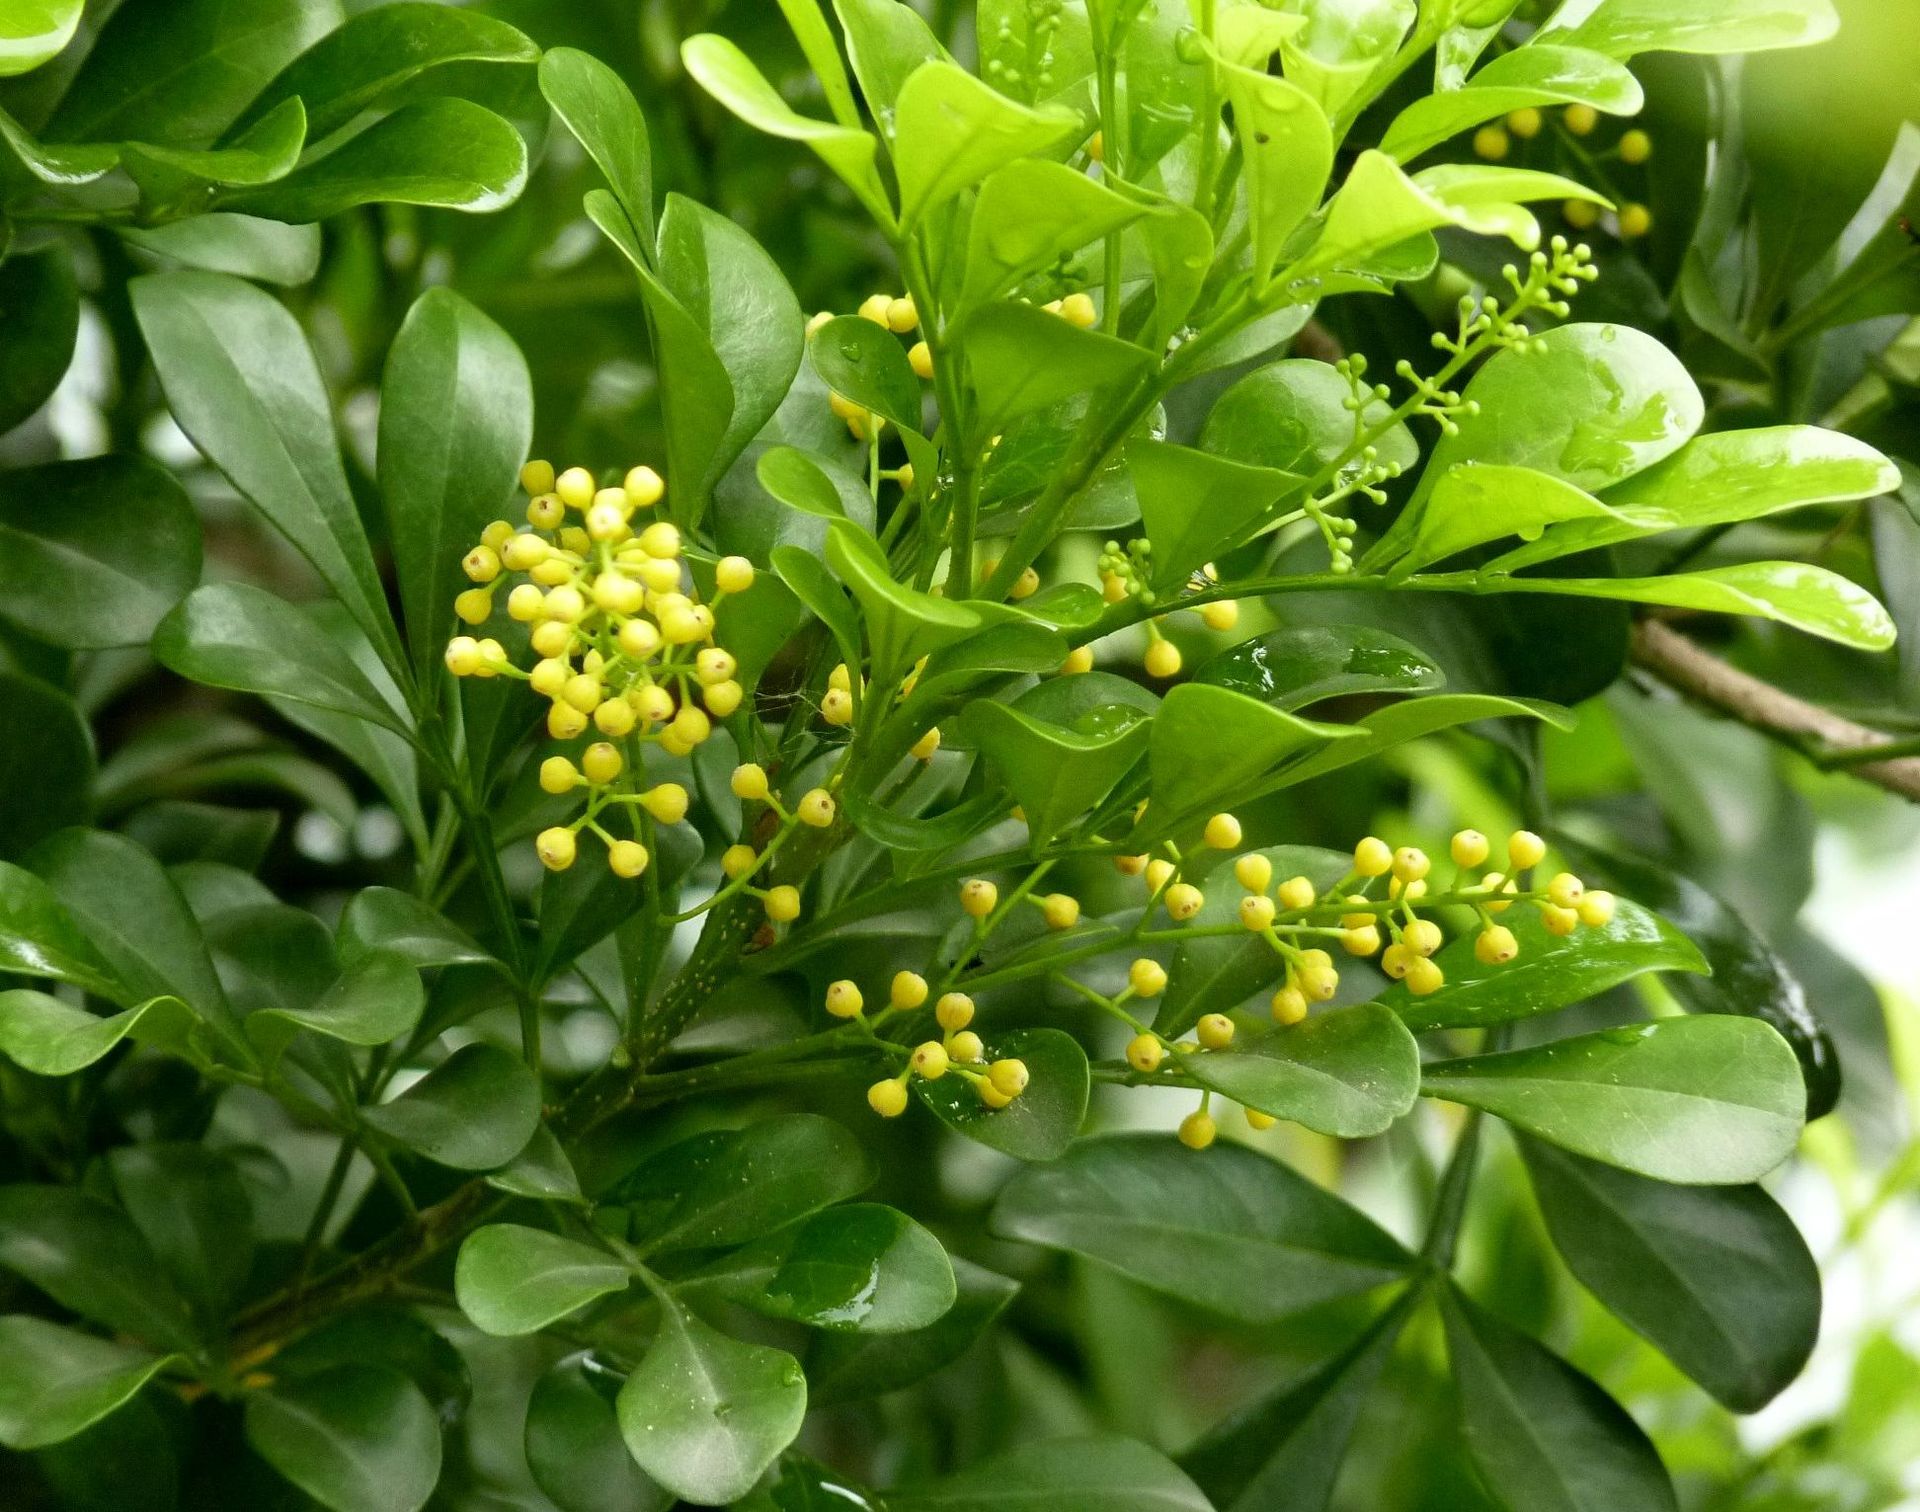 米兰在热带地区是一种常见的植物,它也是一种常见的室内植物,可以增加